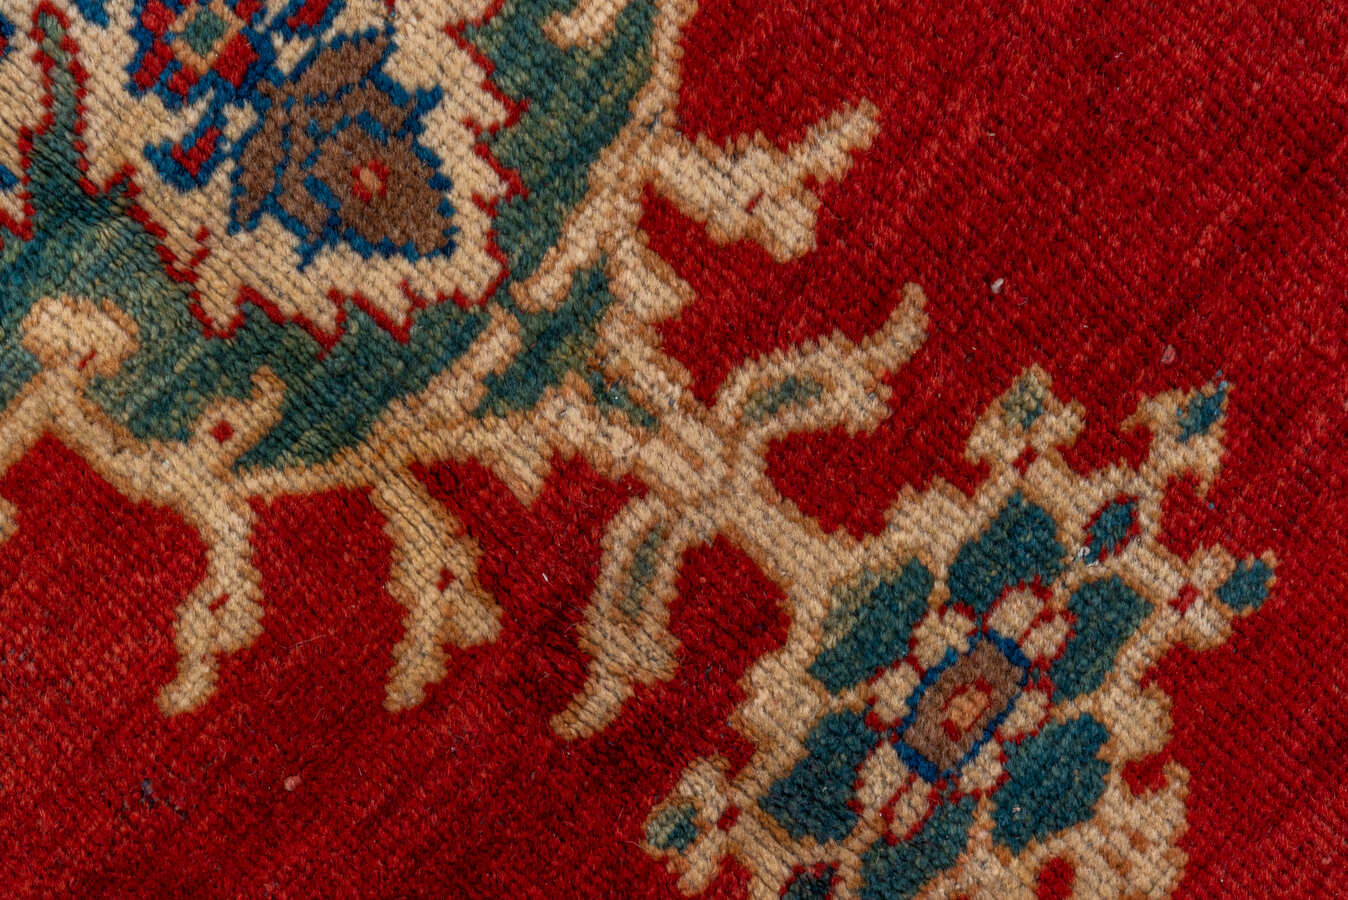 Antique sultan abad Carpet - # 56829